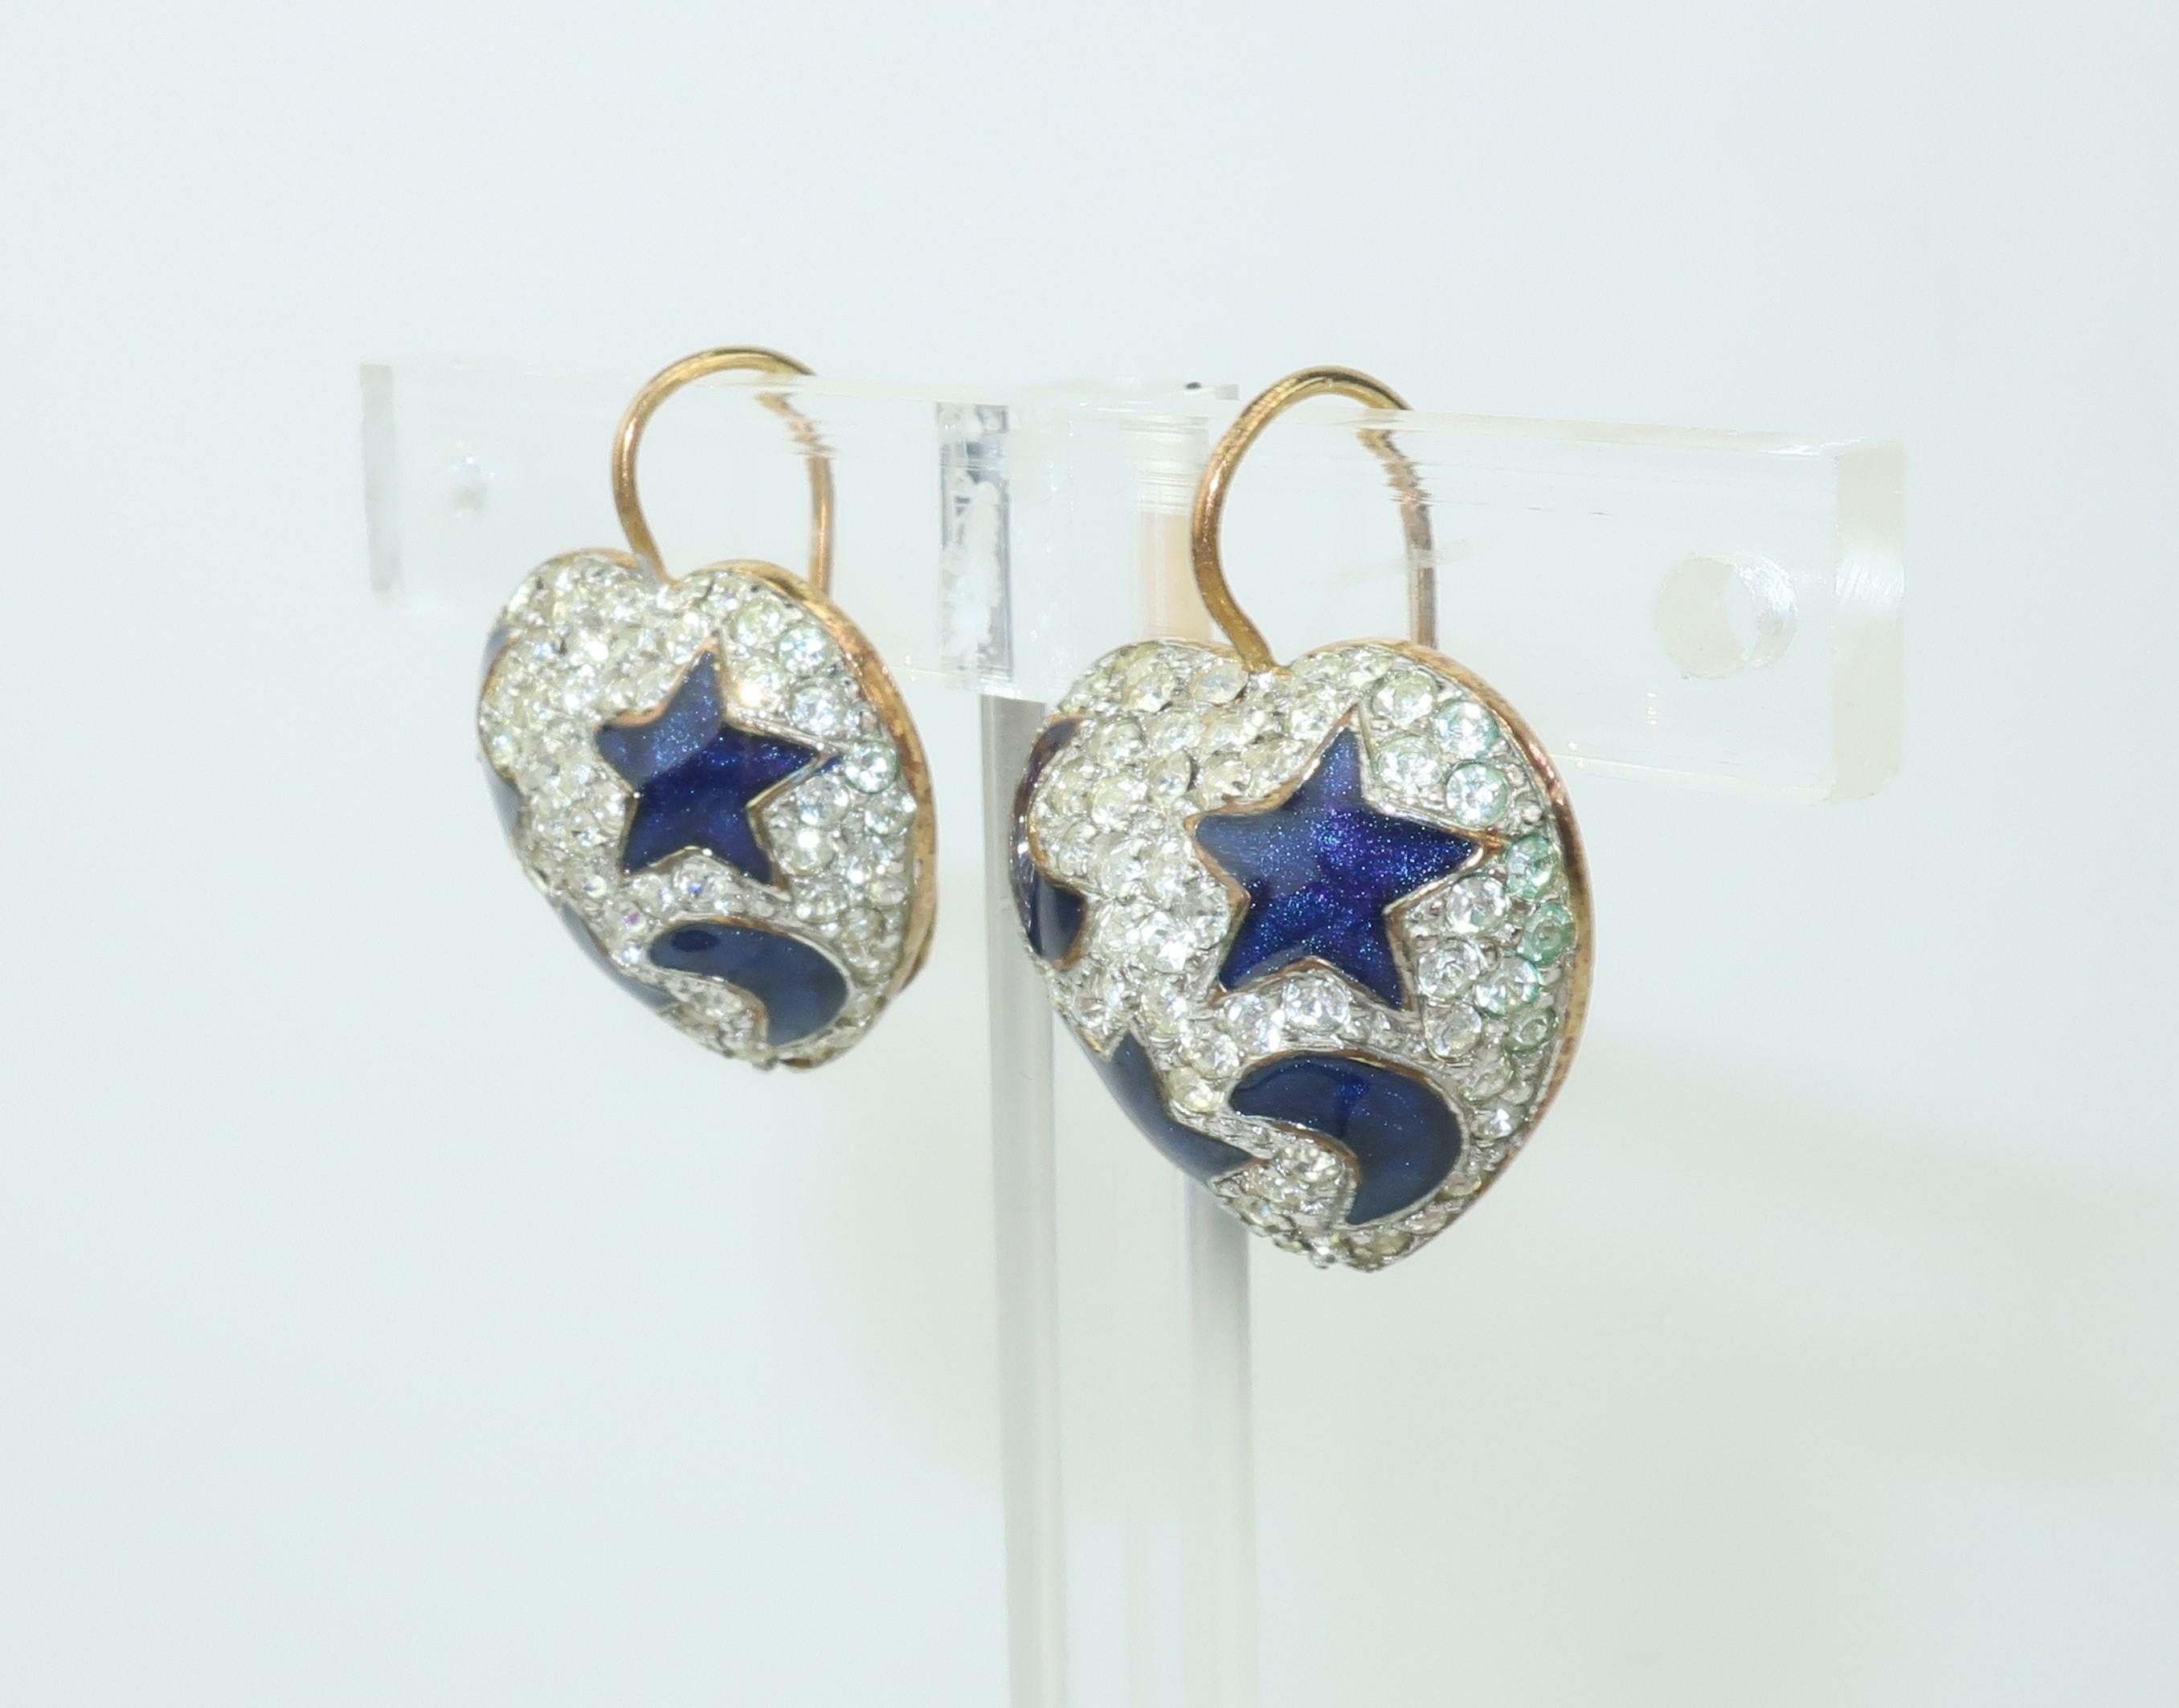 Modern Swarovski Heart Earrings With Blue Enamel Stars & Moon